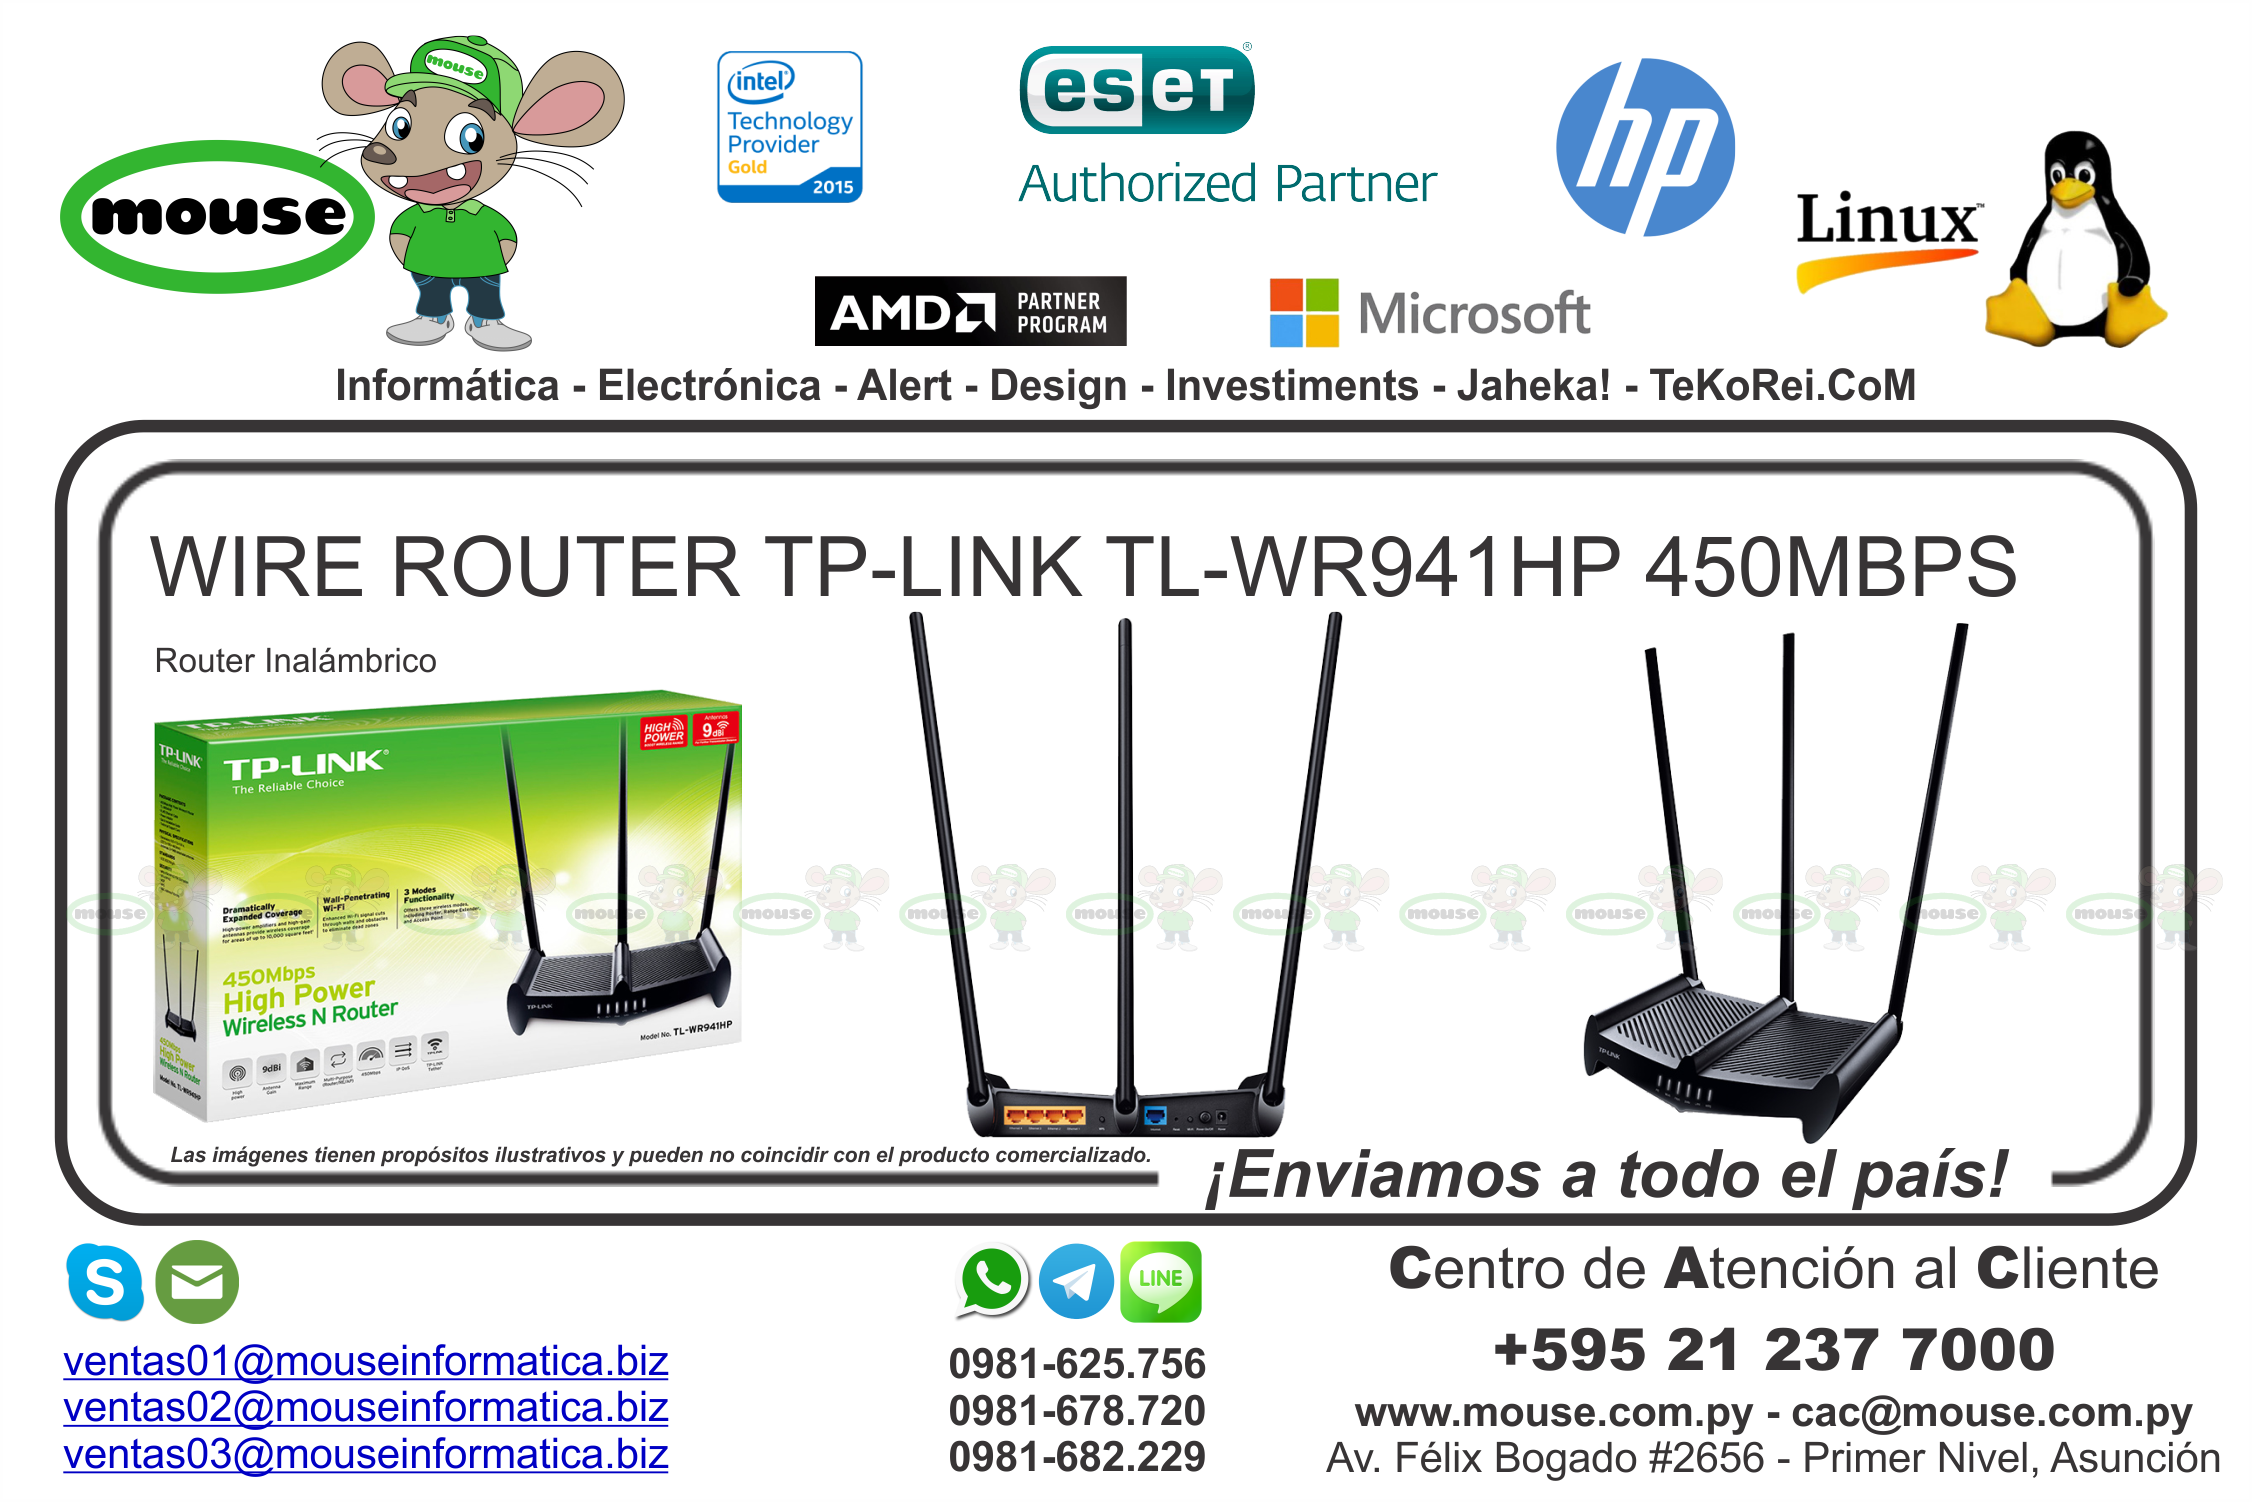 TL-WR941HP, Router de Alta Potencia de hasta 450Mbps